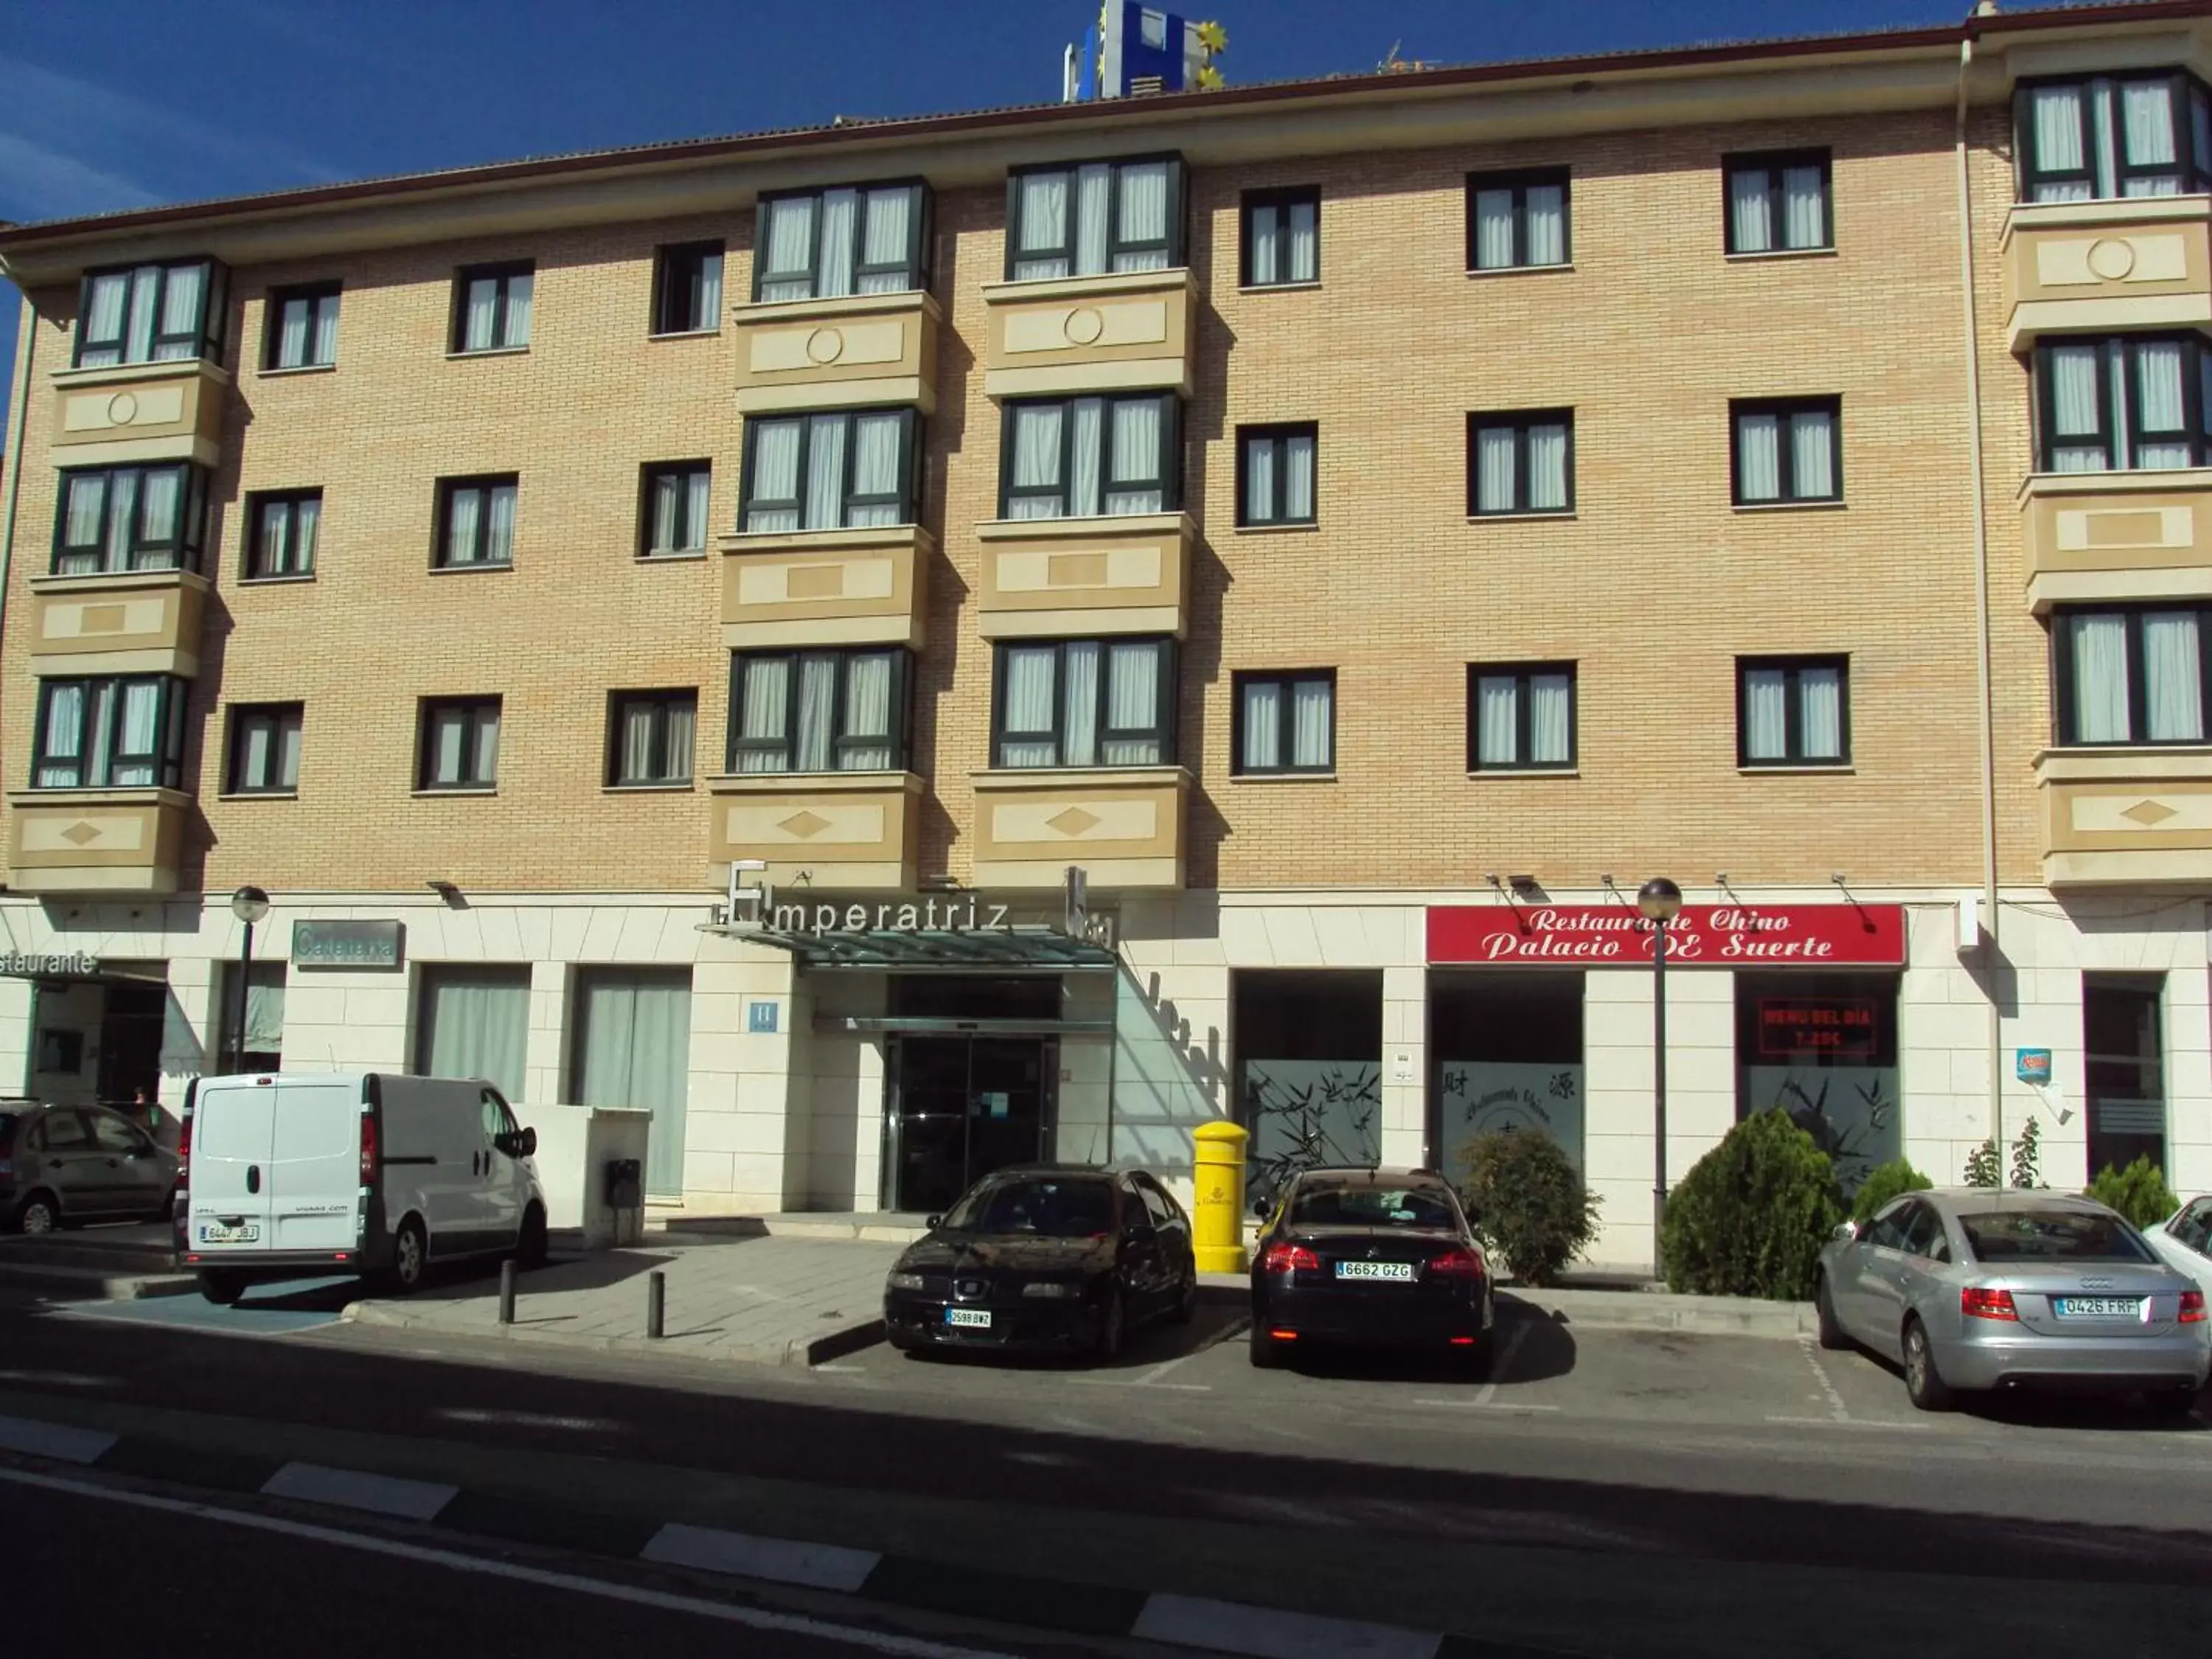 Property Building in Hotel Puerta de Ocaña